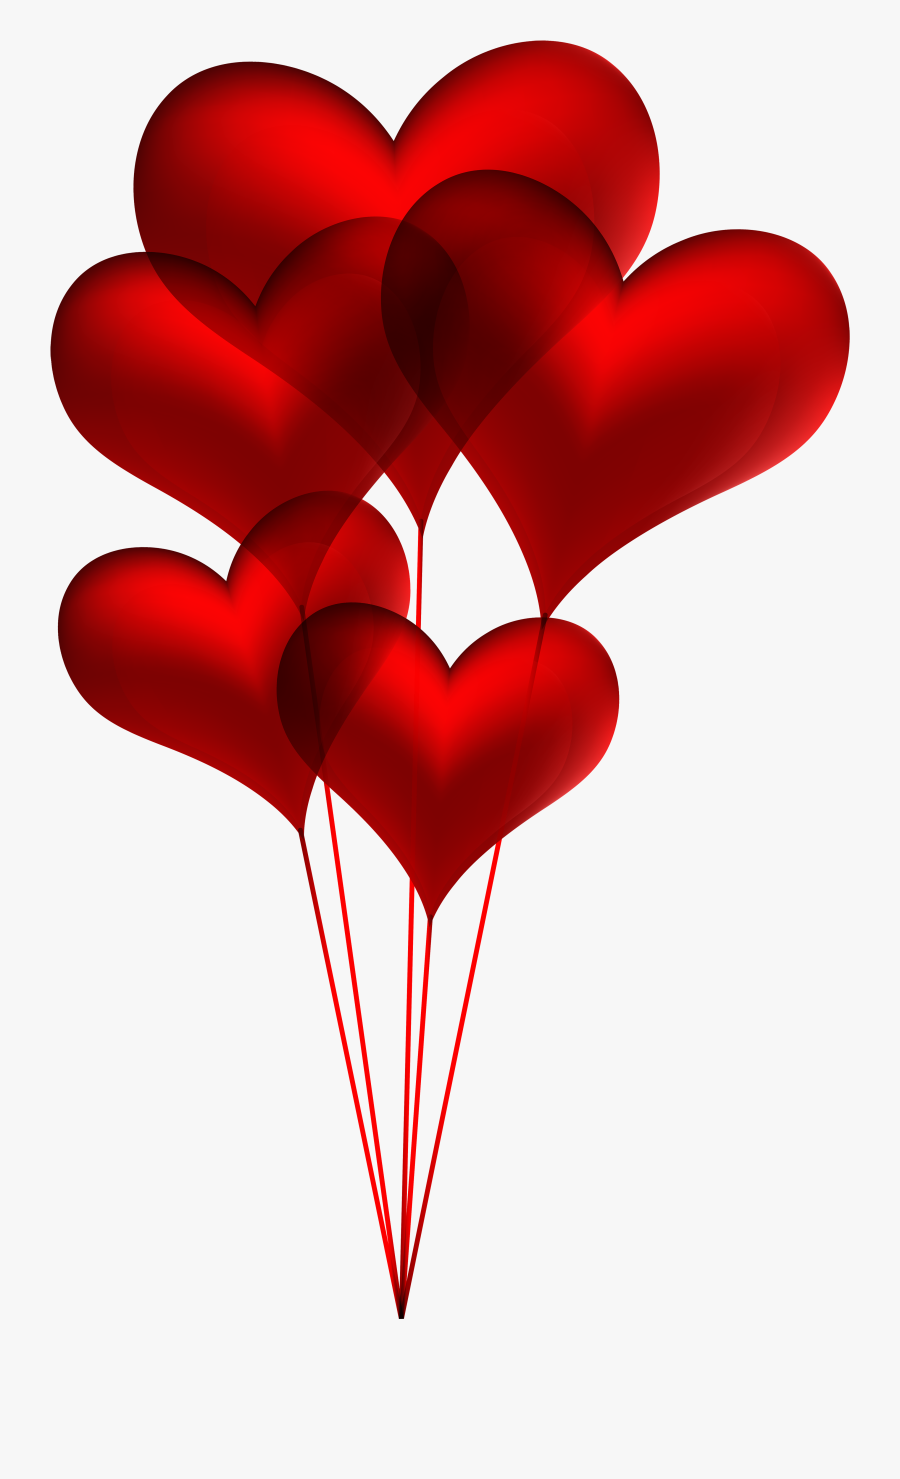 Clip Art Heart Balloons Clip Art - Heart Balloons Clip Art, Transparent Clipart